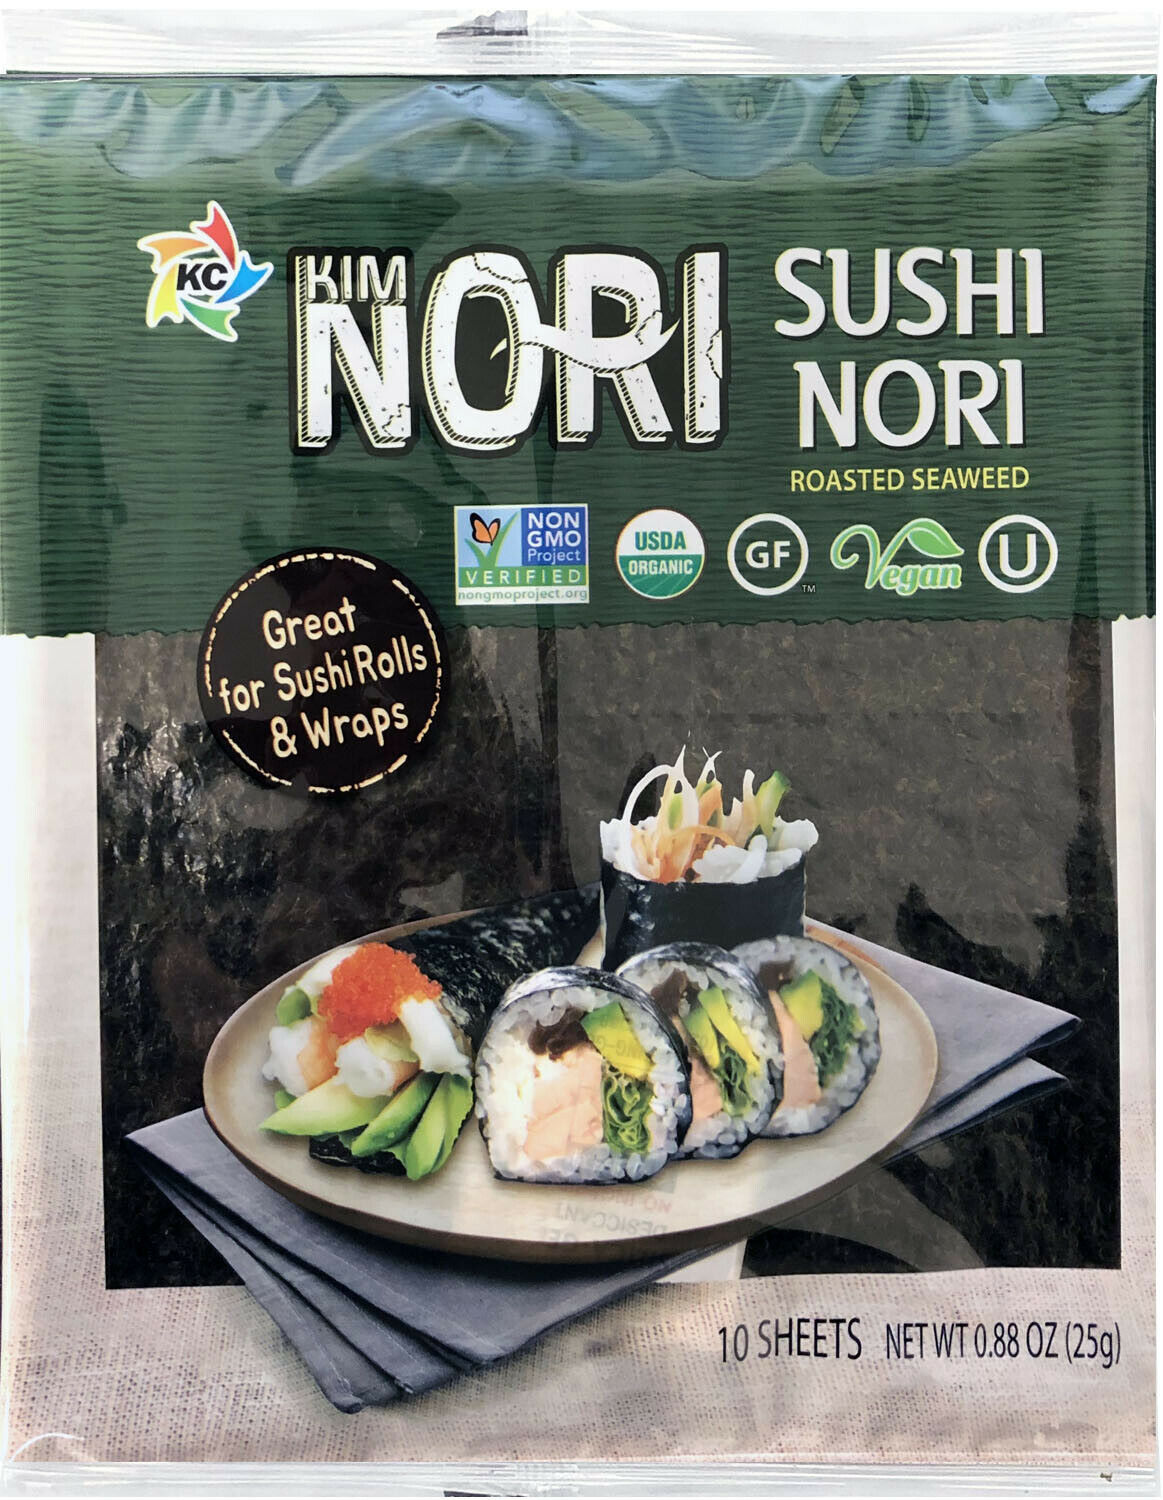 Kosher Organic 10-100 Sheet Kimnori Sushi Nori Roasted Seaweed Rolls Wraps Laver